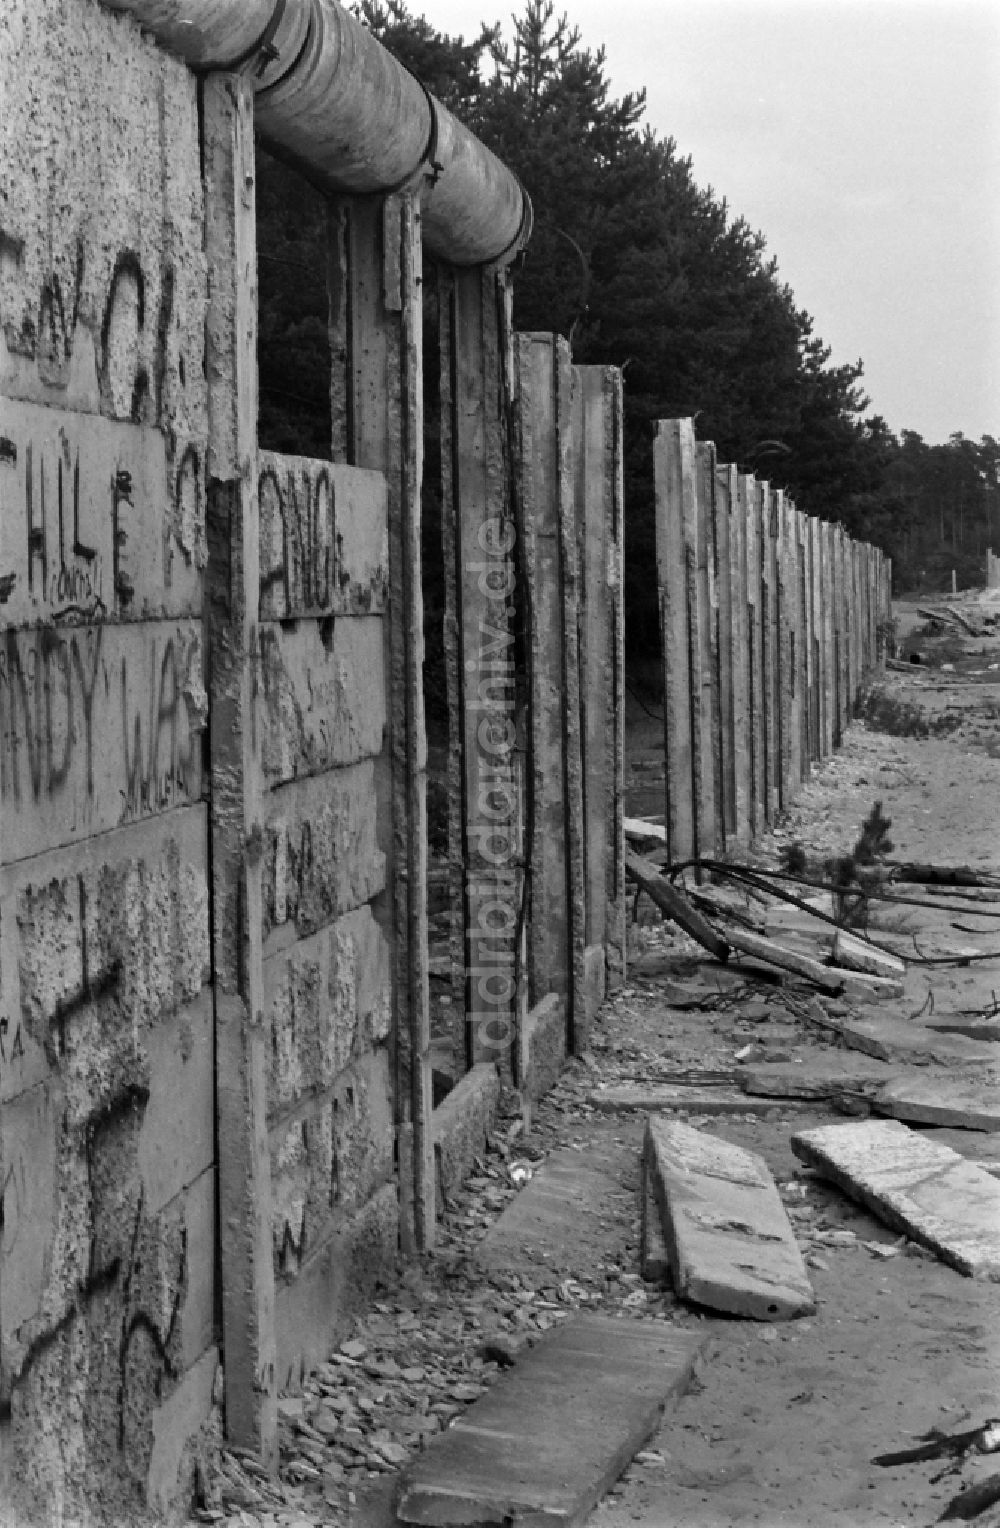 Berlin: Fragmente der verfallenden Grenzbefestigung und Mauer in Berlin in der DDR